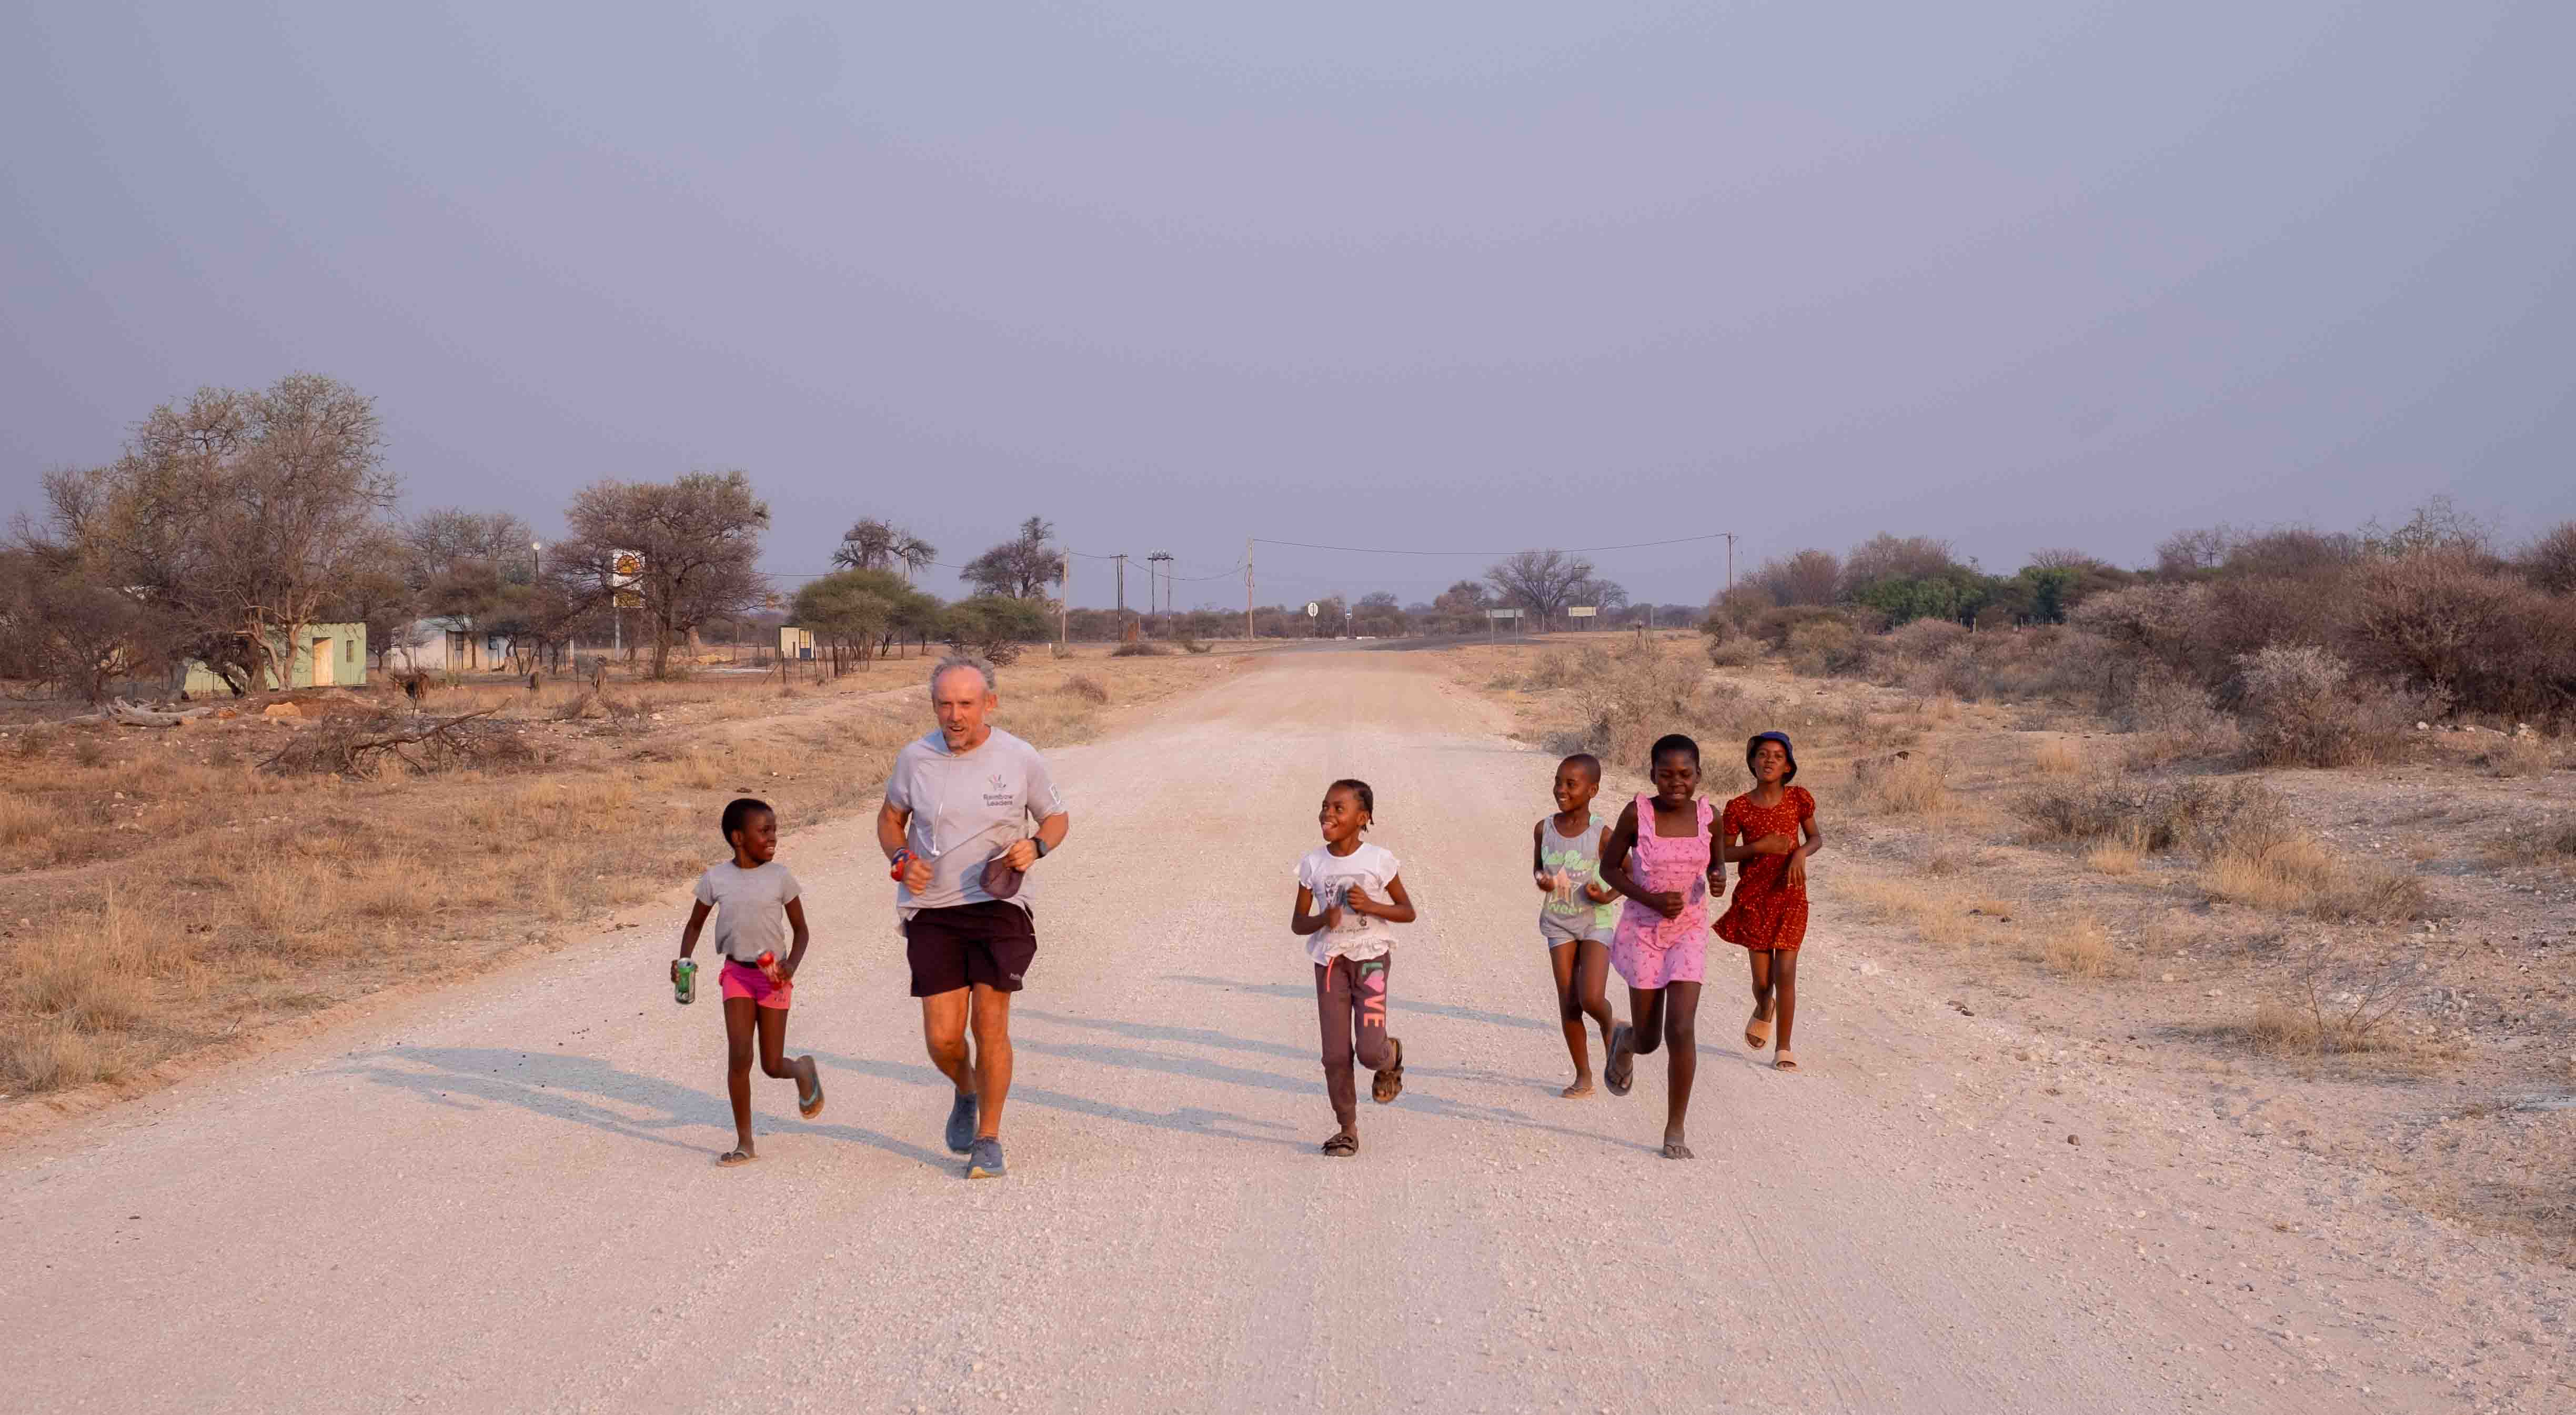 Man runs with children in Africa